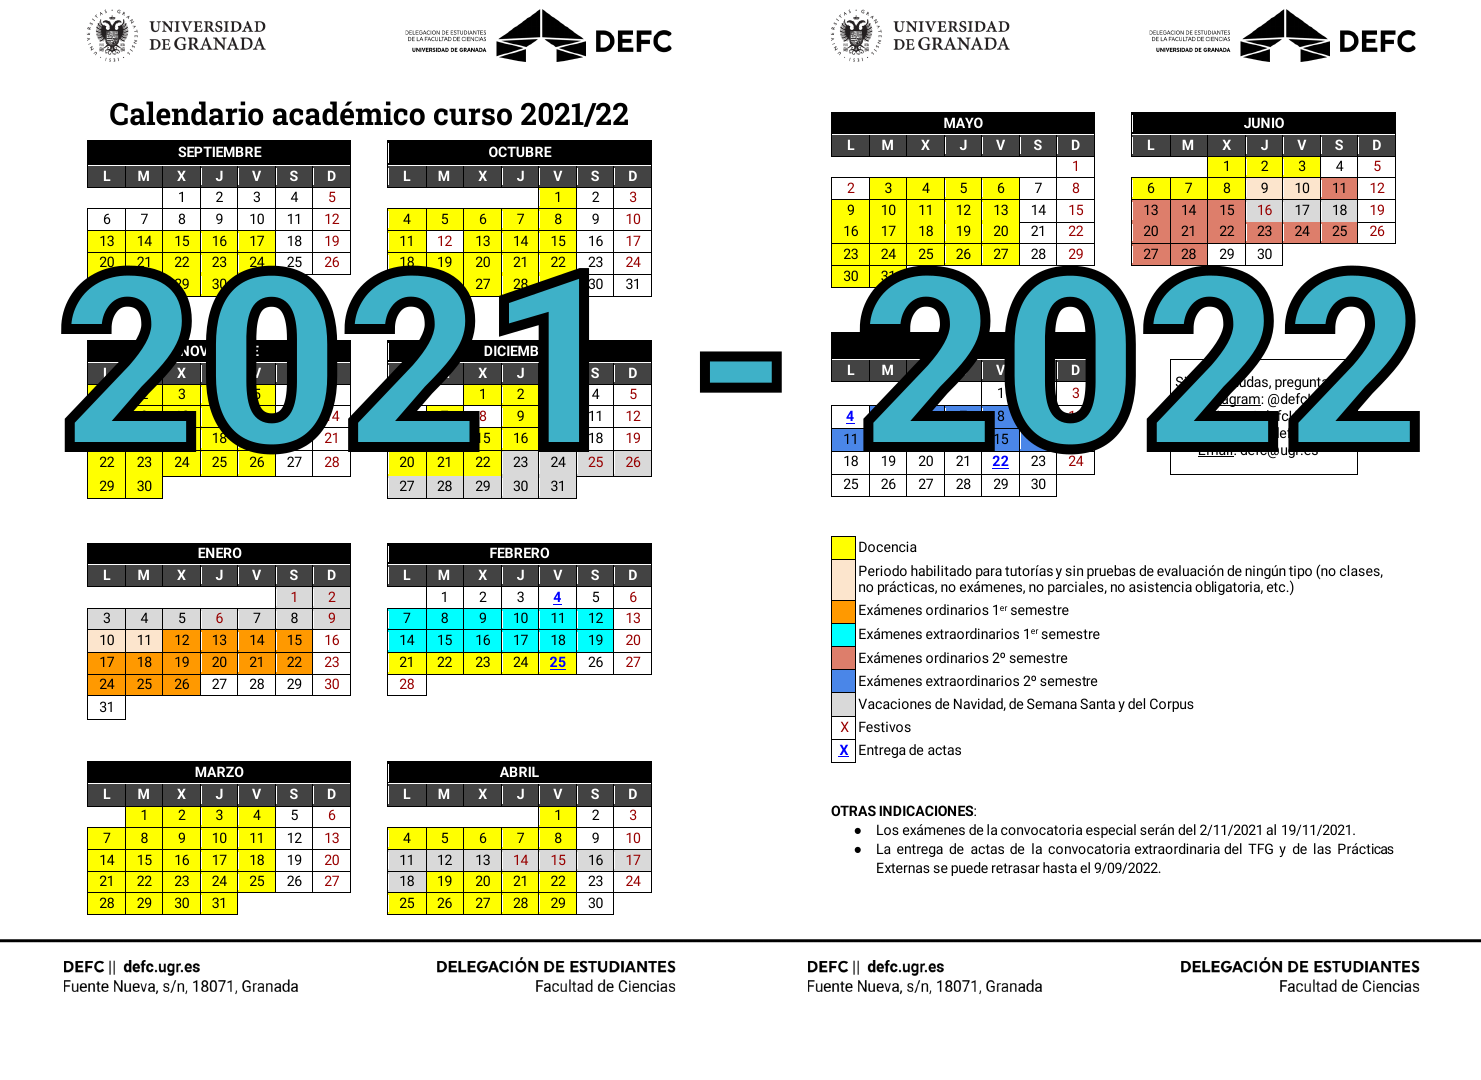 Calendario académico del curso 2021-2022